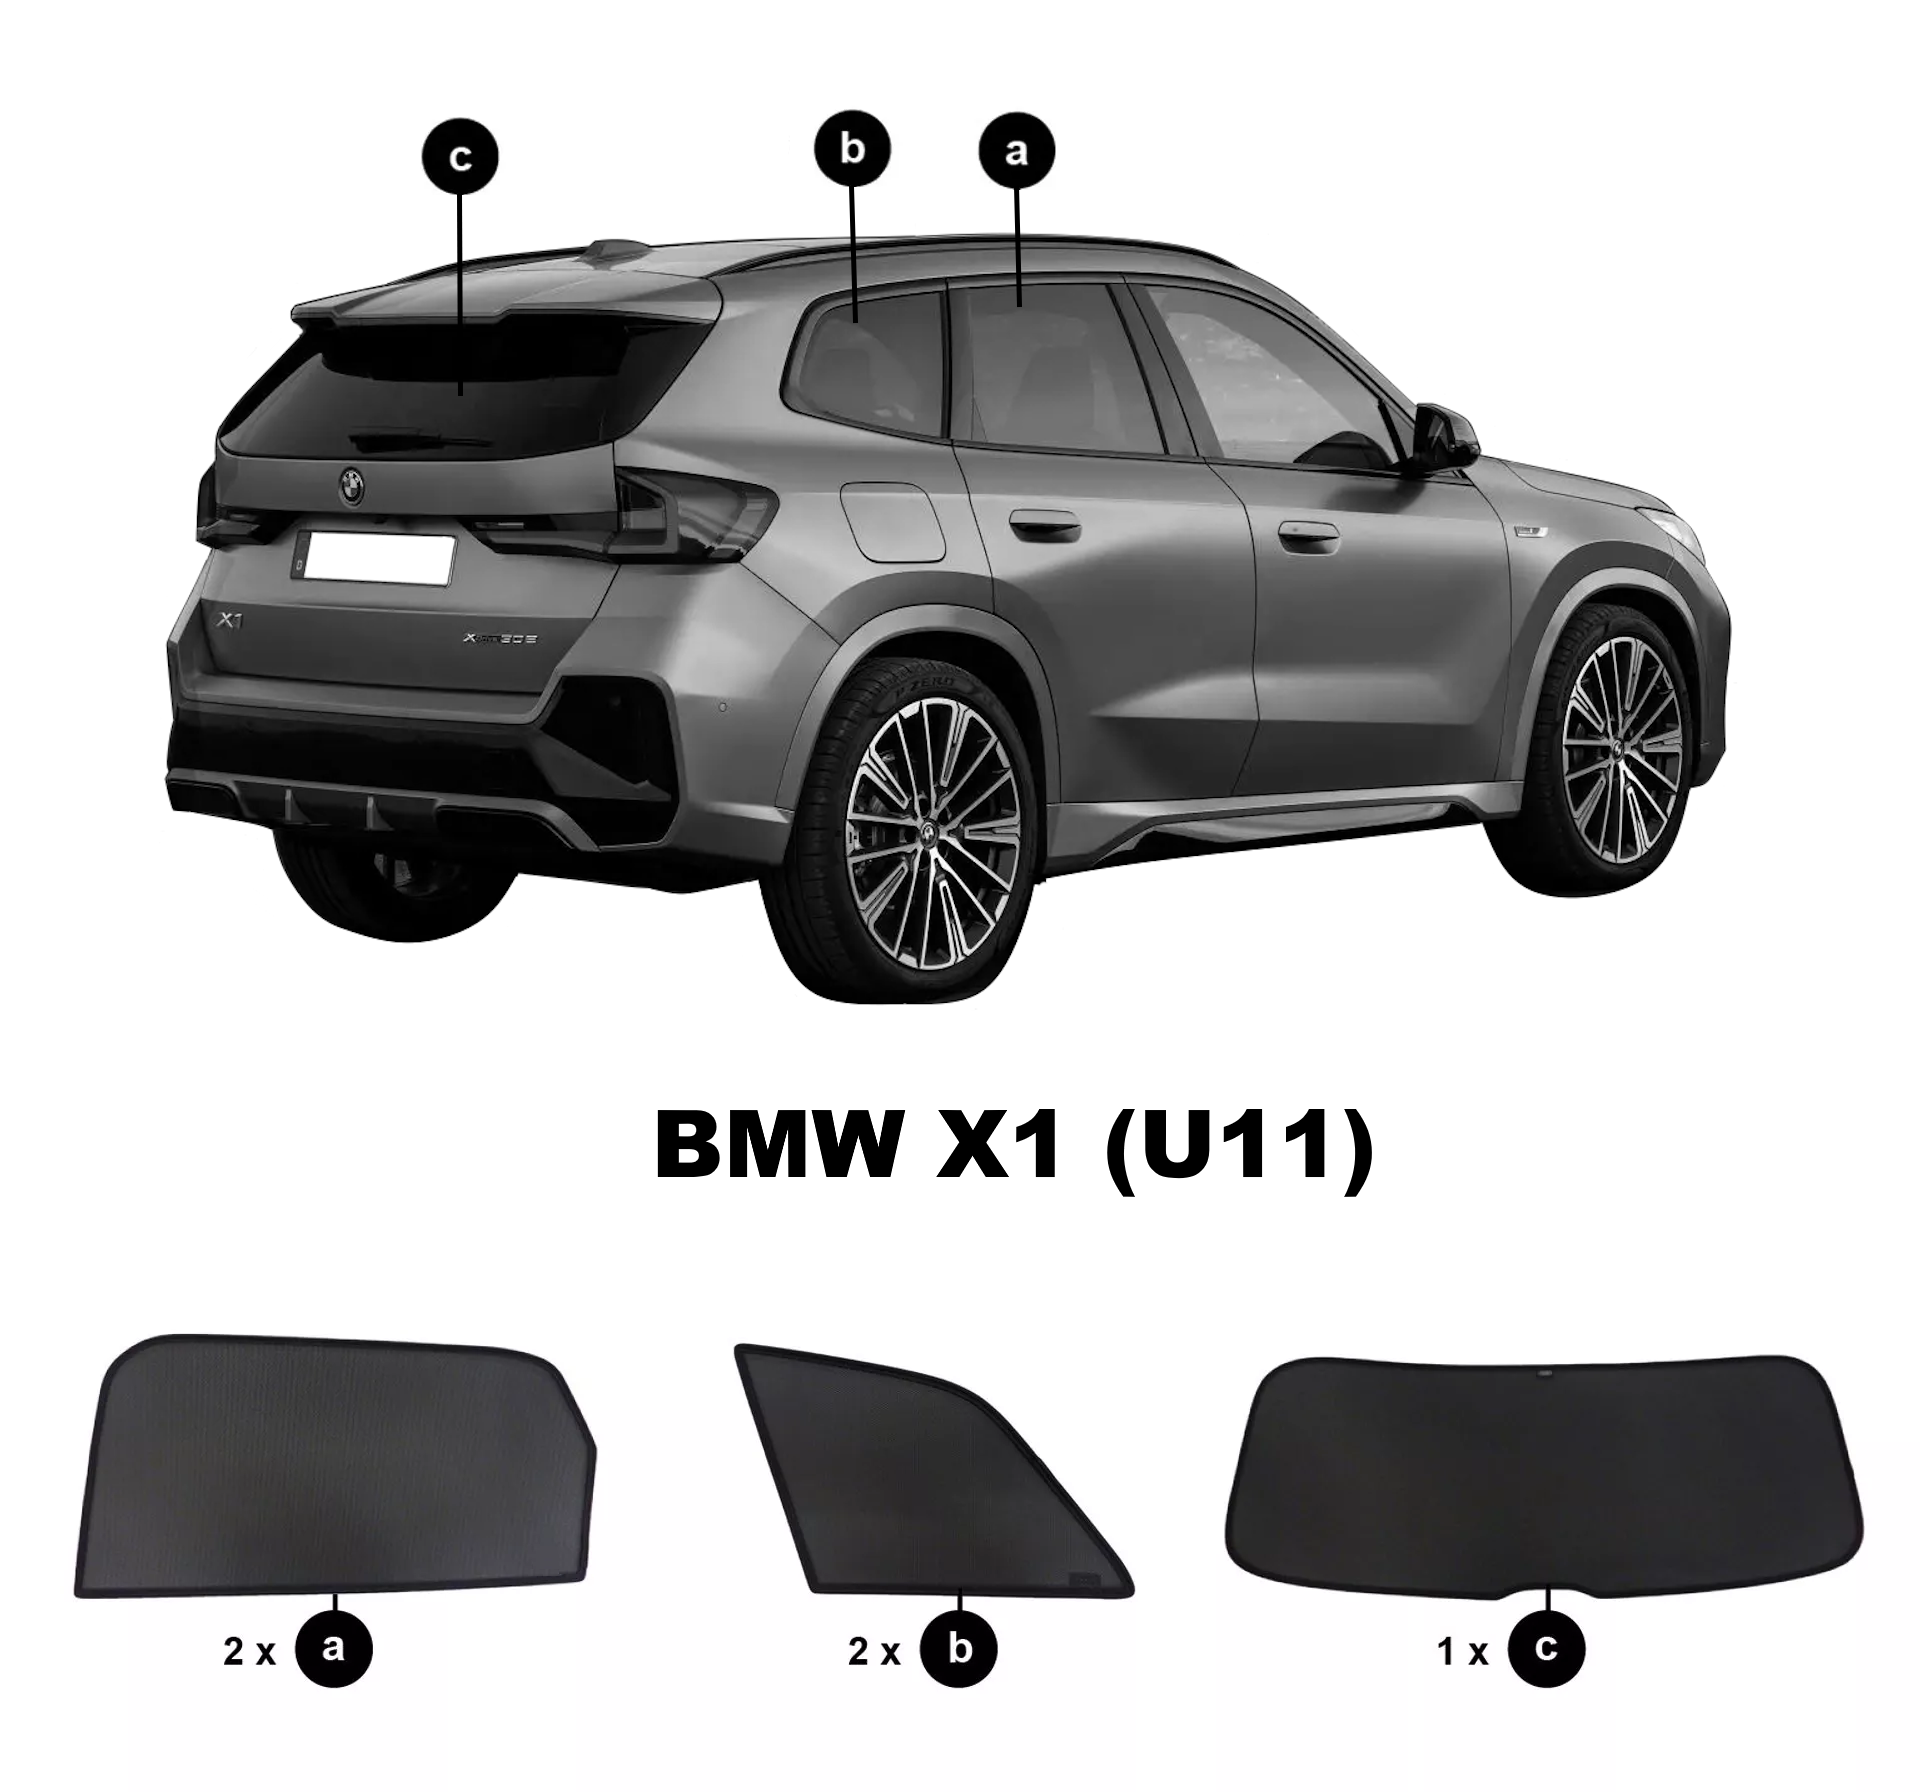  Car shades BMW X1 iX1 U11